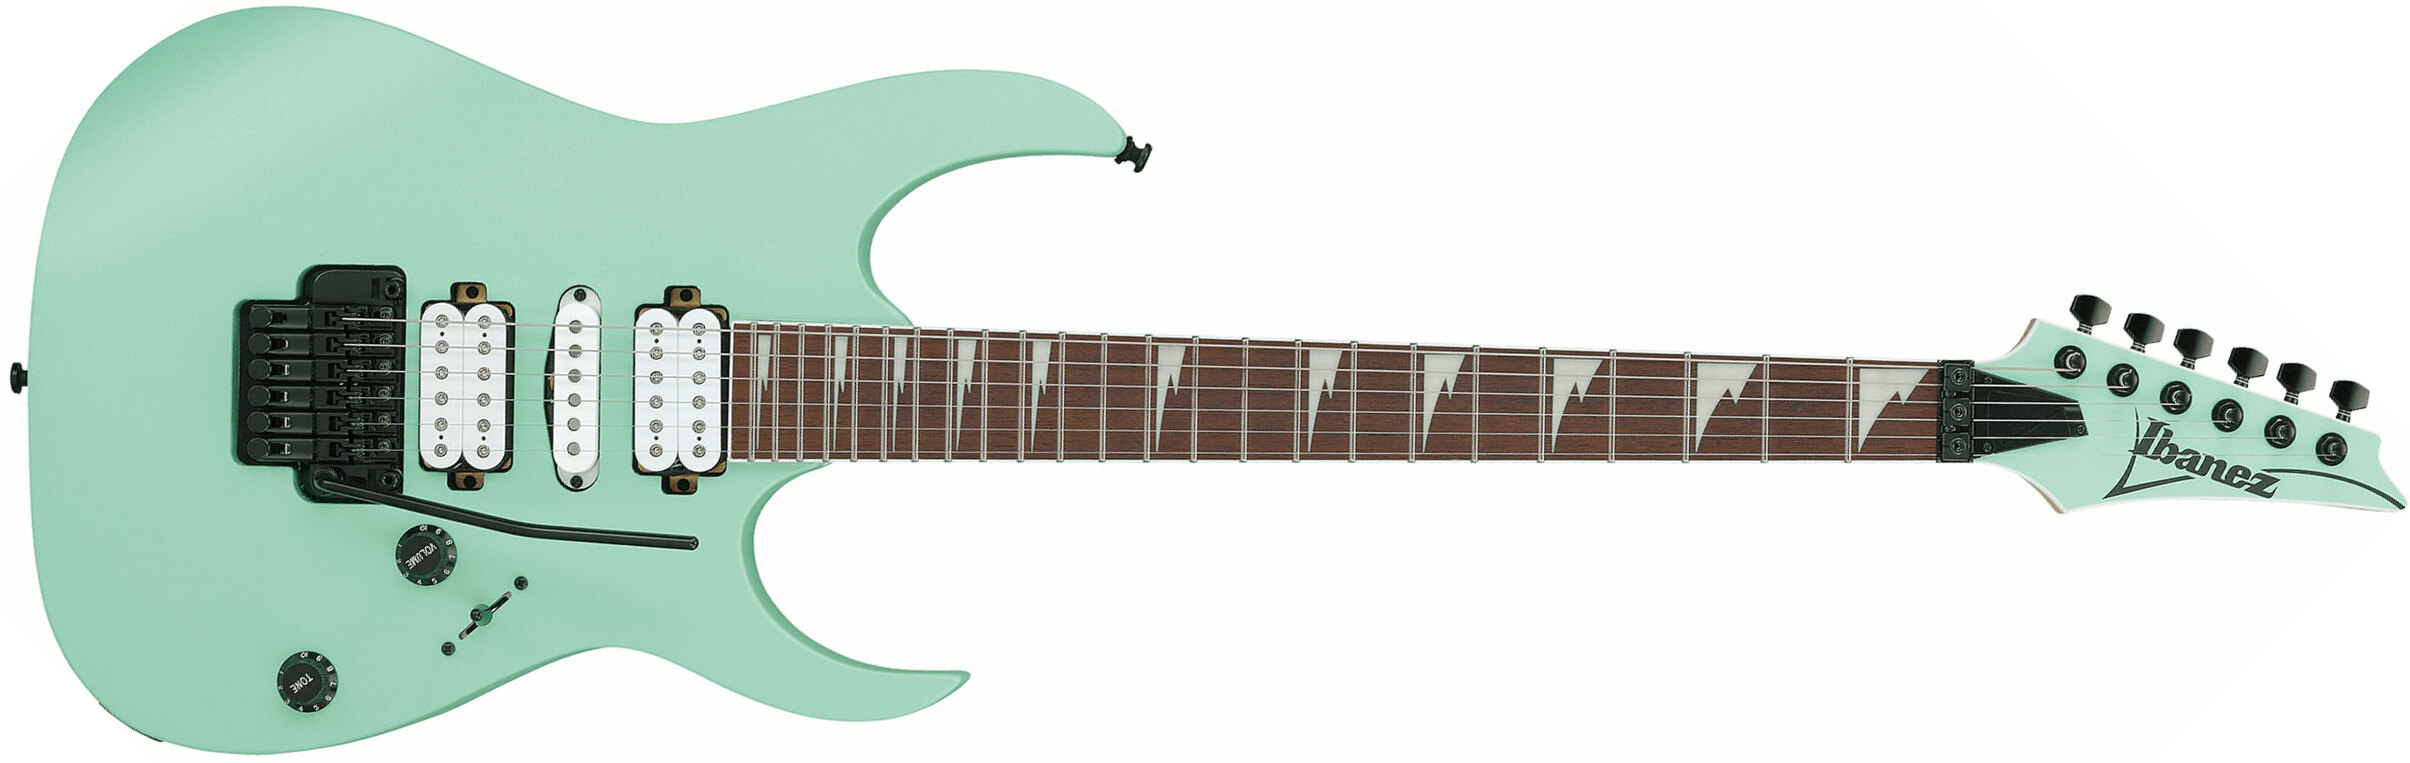 Ibanez Rg470dx Sfm Standard Hsh Fr Jat - Sea Foam Green Matte - E-Gitarre in Str-Form - Main picture